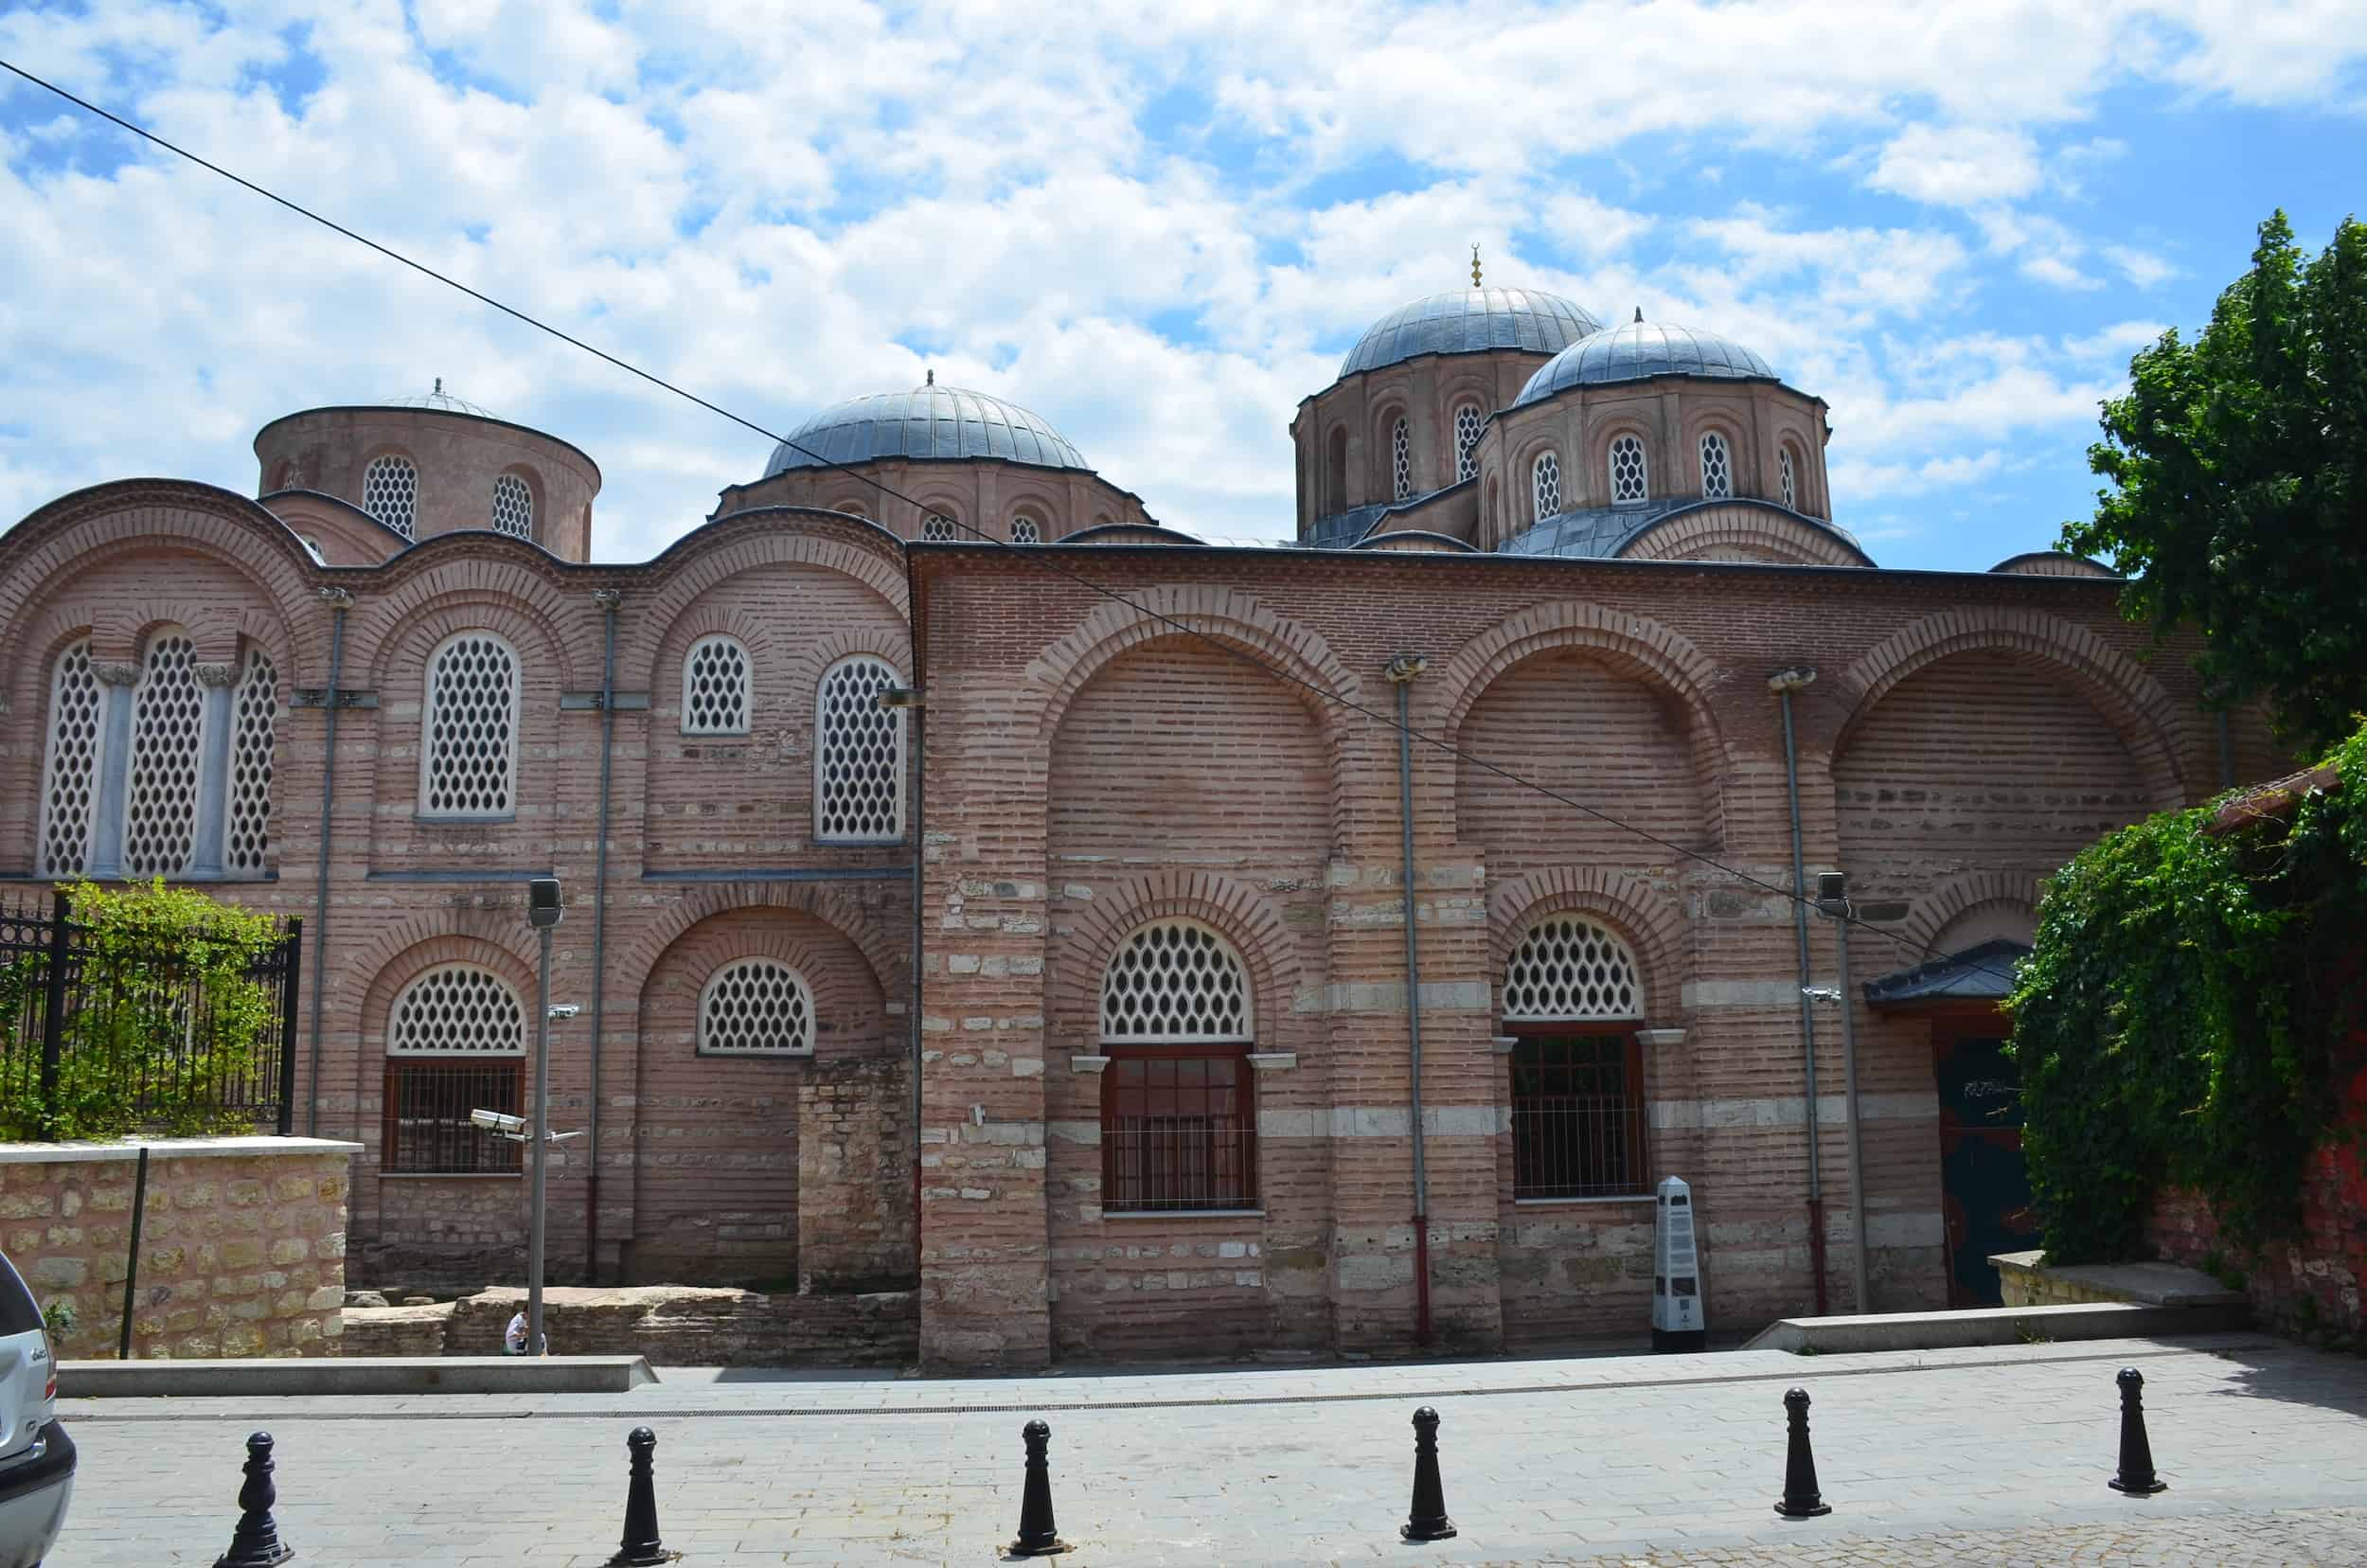 Zeyrek Mosque from the west in Zeyrek, Istanbul, Turkey